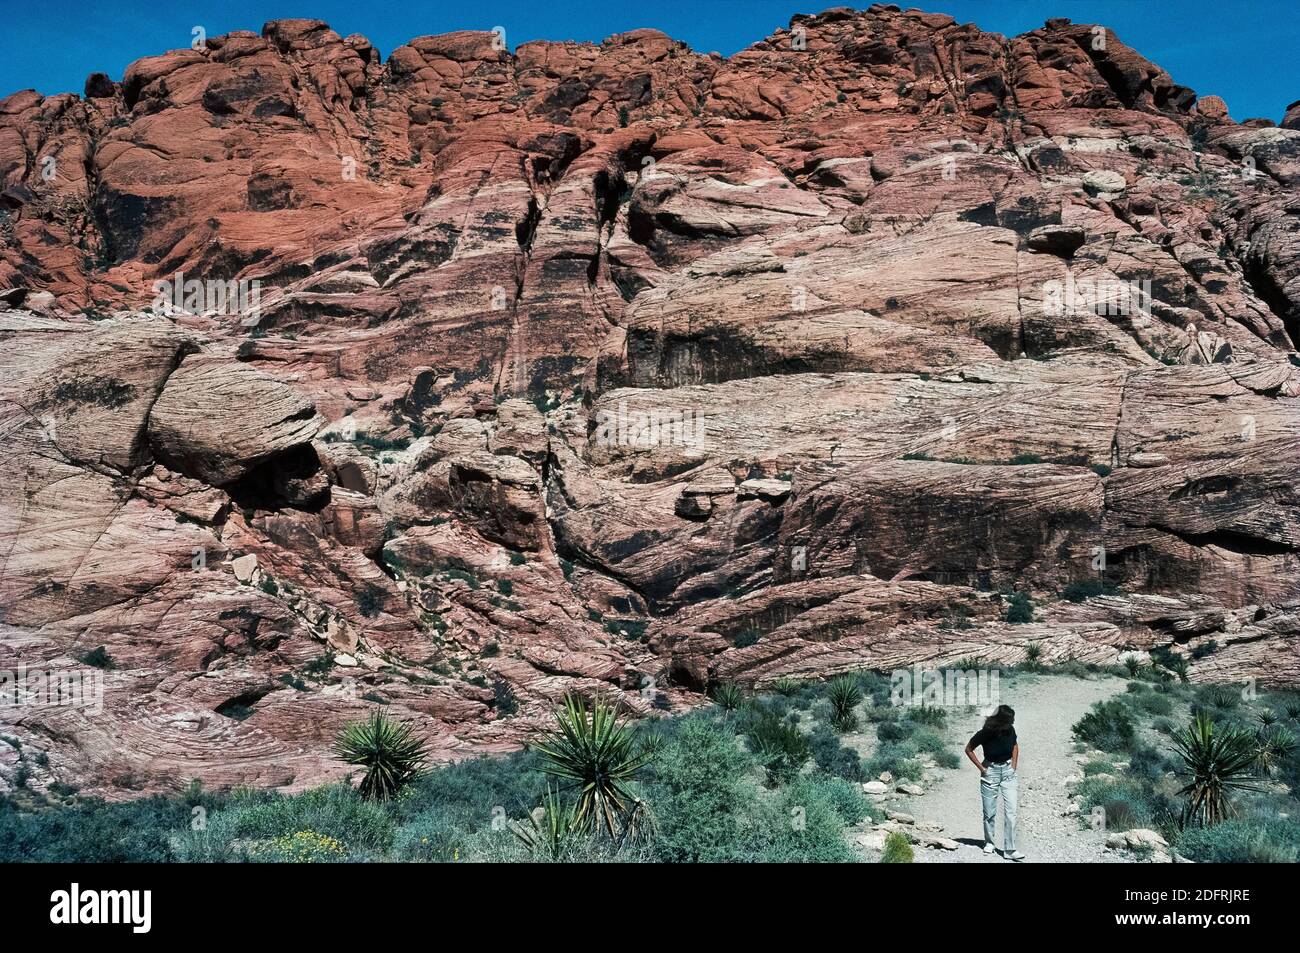 Zahlreiche Wanderwege ermöglichen den Besuchern einen Blick aus der Nähe auf das Mojave Desert Terrain und ungewöhnliche geologische Formationen im riesigen Red Rock Canyon National Conservation Area ein paar Meilen westlich von Las Vegas in Nevada, USA. Eisenmineralien in Sandsteinschichten, die vor Millionen von Jahren entstanden sind, oxidierten im Laufe der Zeit, um dem Gestein seine rötliche Farbe zu verleihen, nach der das ausgedehnte Schutzgebiet benannt ist. Wo das Gestein in der Farbe buff ist, wurden die Eisenmineralien nie abgelagert oder das Eisen wurde durch unterirrtes Wasser ausgewaschen. Viele der Wanderwege sind von einer einbahnigen 13-Meilen Scenic Drive Loop Road aus erreichbar Stockfoto